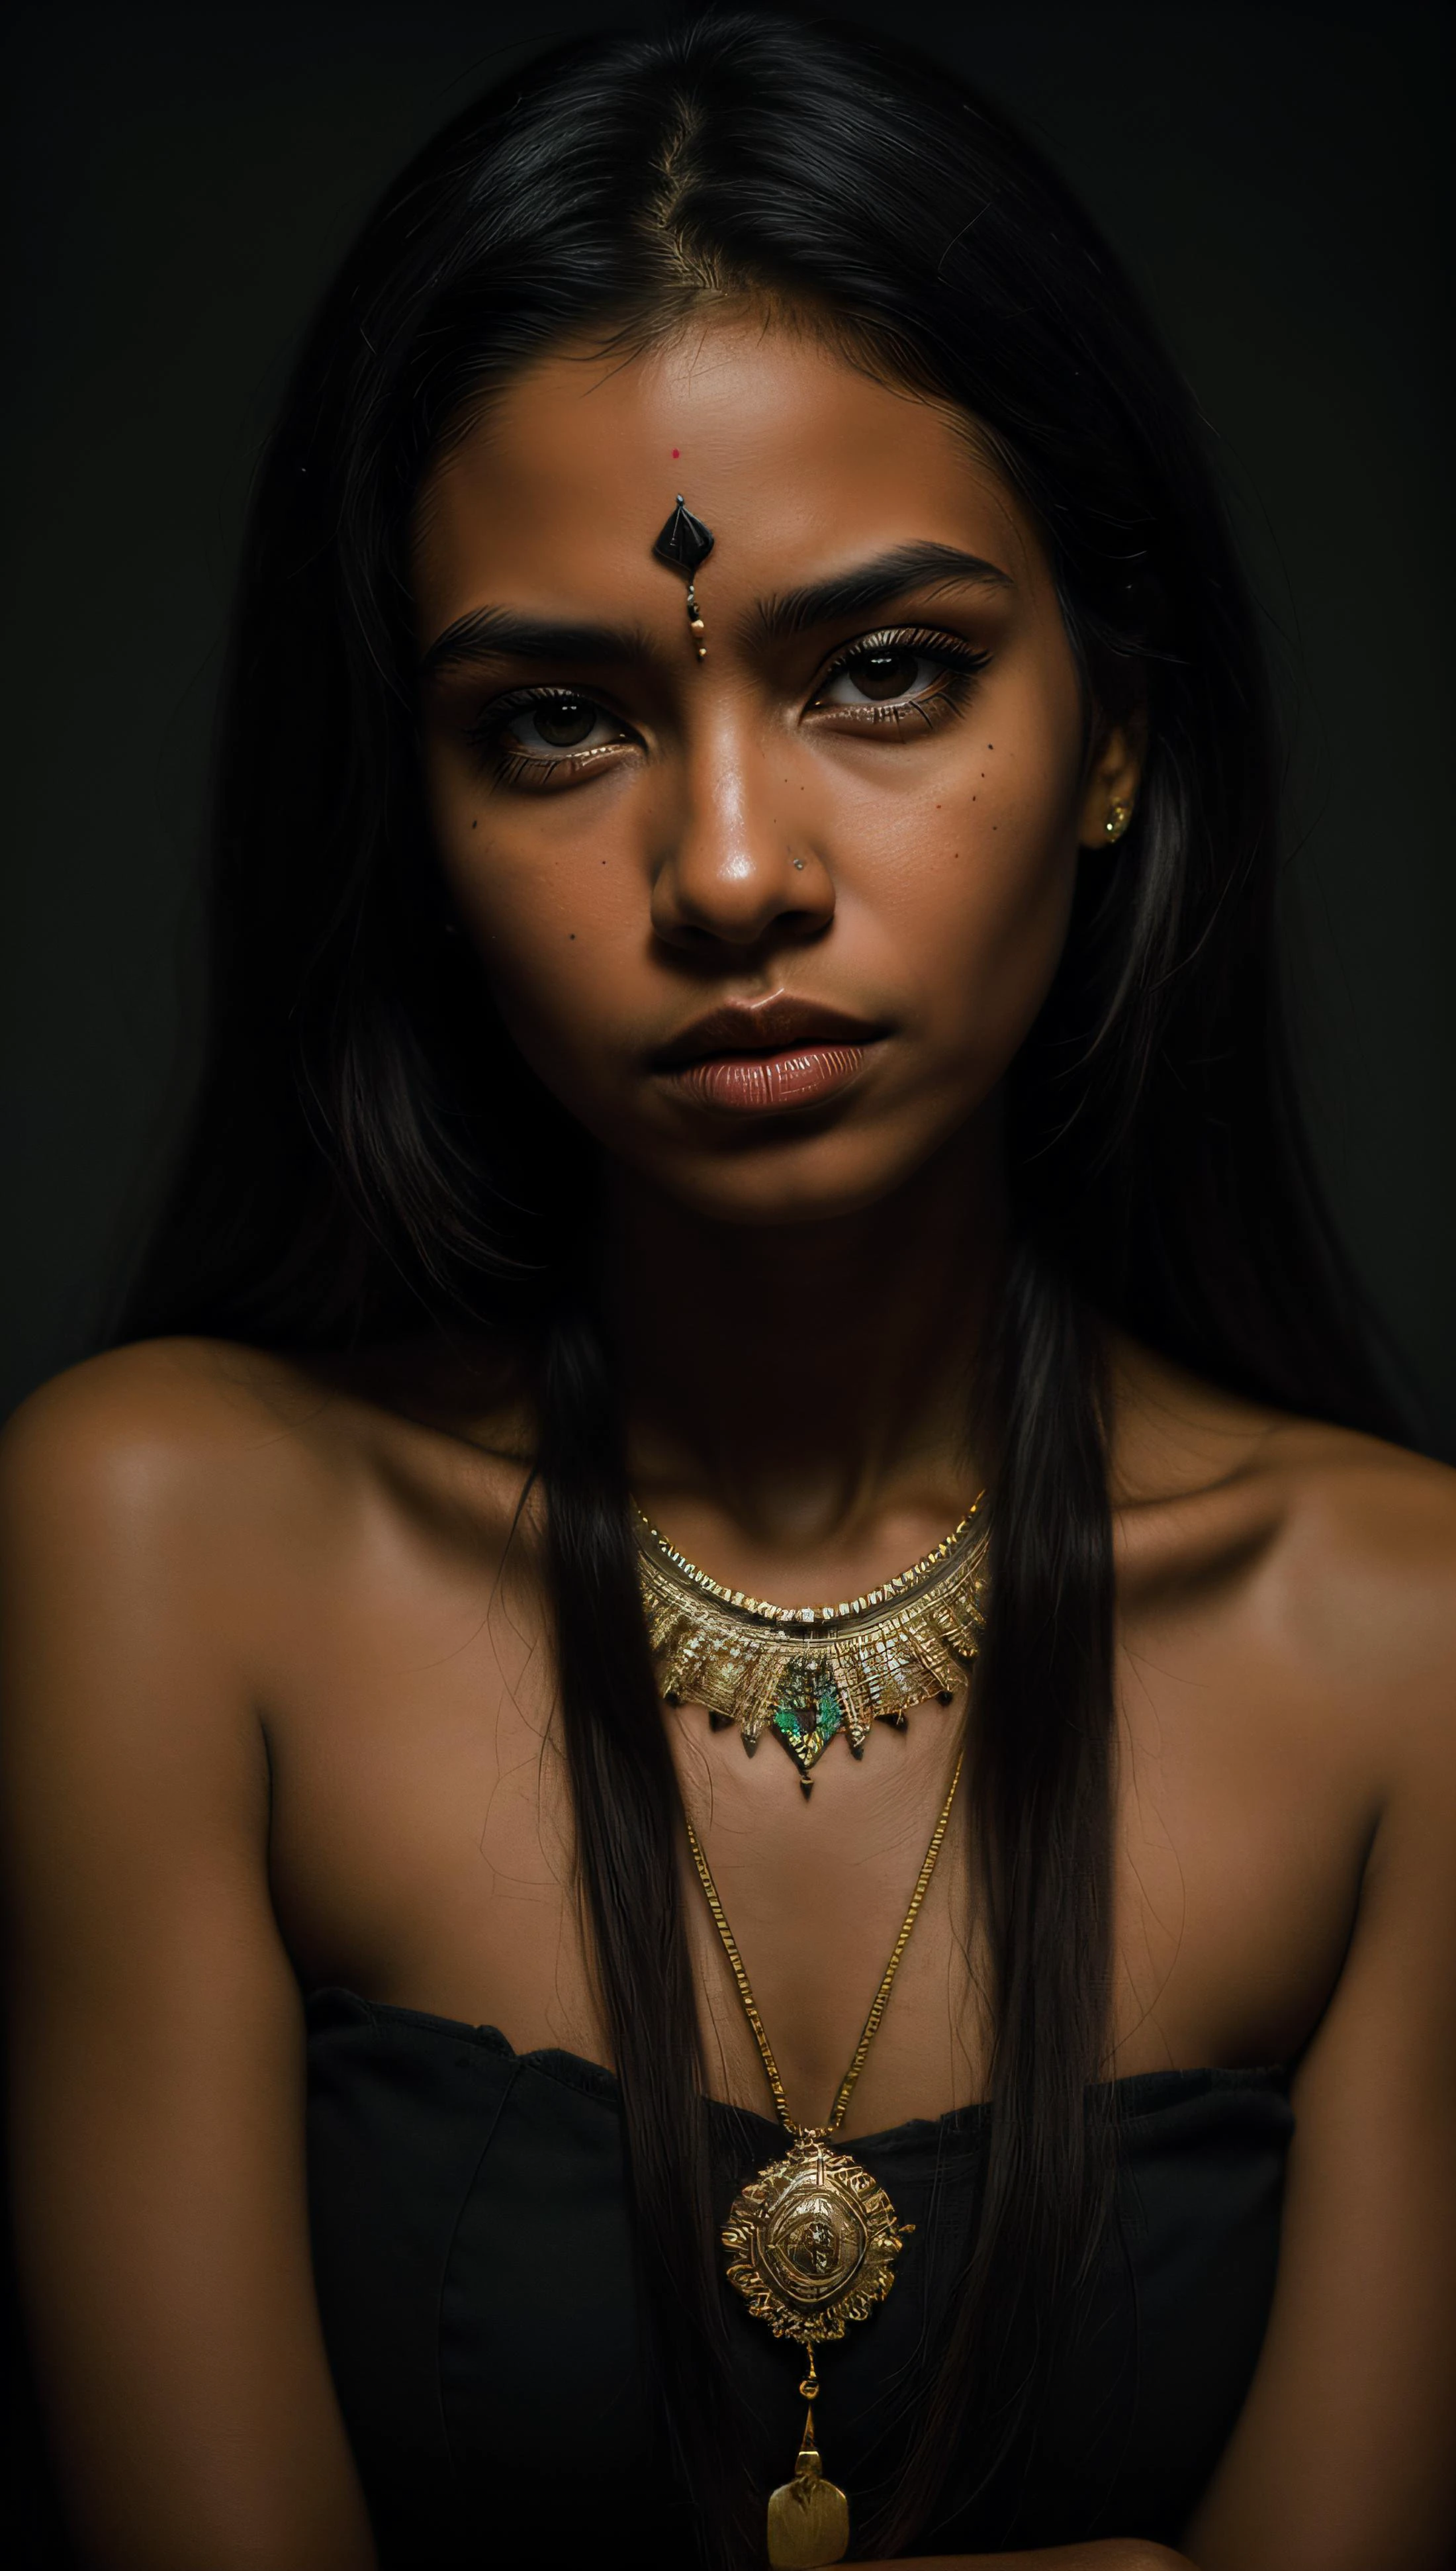 焦糖皮膚的部落婦女, 深陰影, 黑暗主題, 40毫米肖像, 部落項鍊, 部落飾品, 絕望, 專業照片, 28毫米, 模擬, (國家地理)